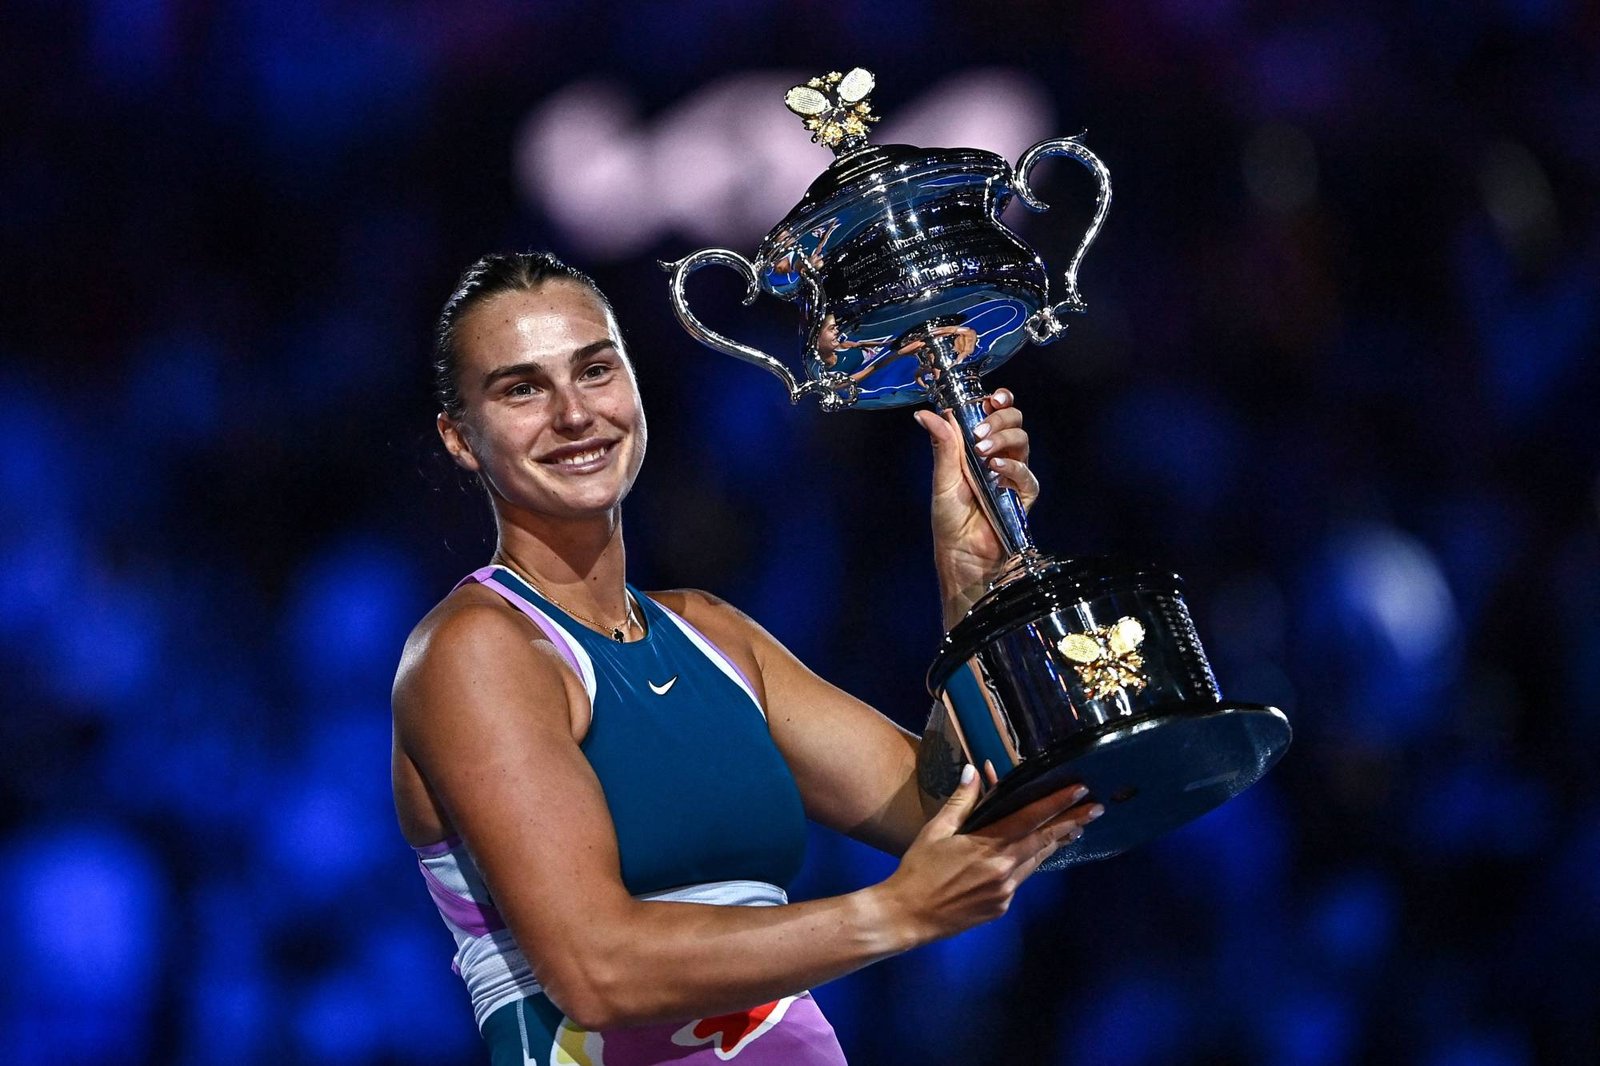 WTA elege as quatro melhores partidas da temporada 2023 - Tenis News